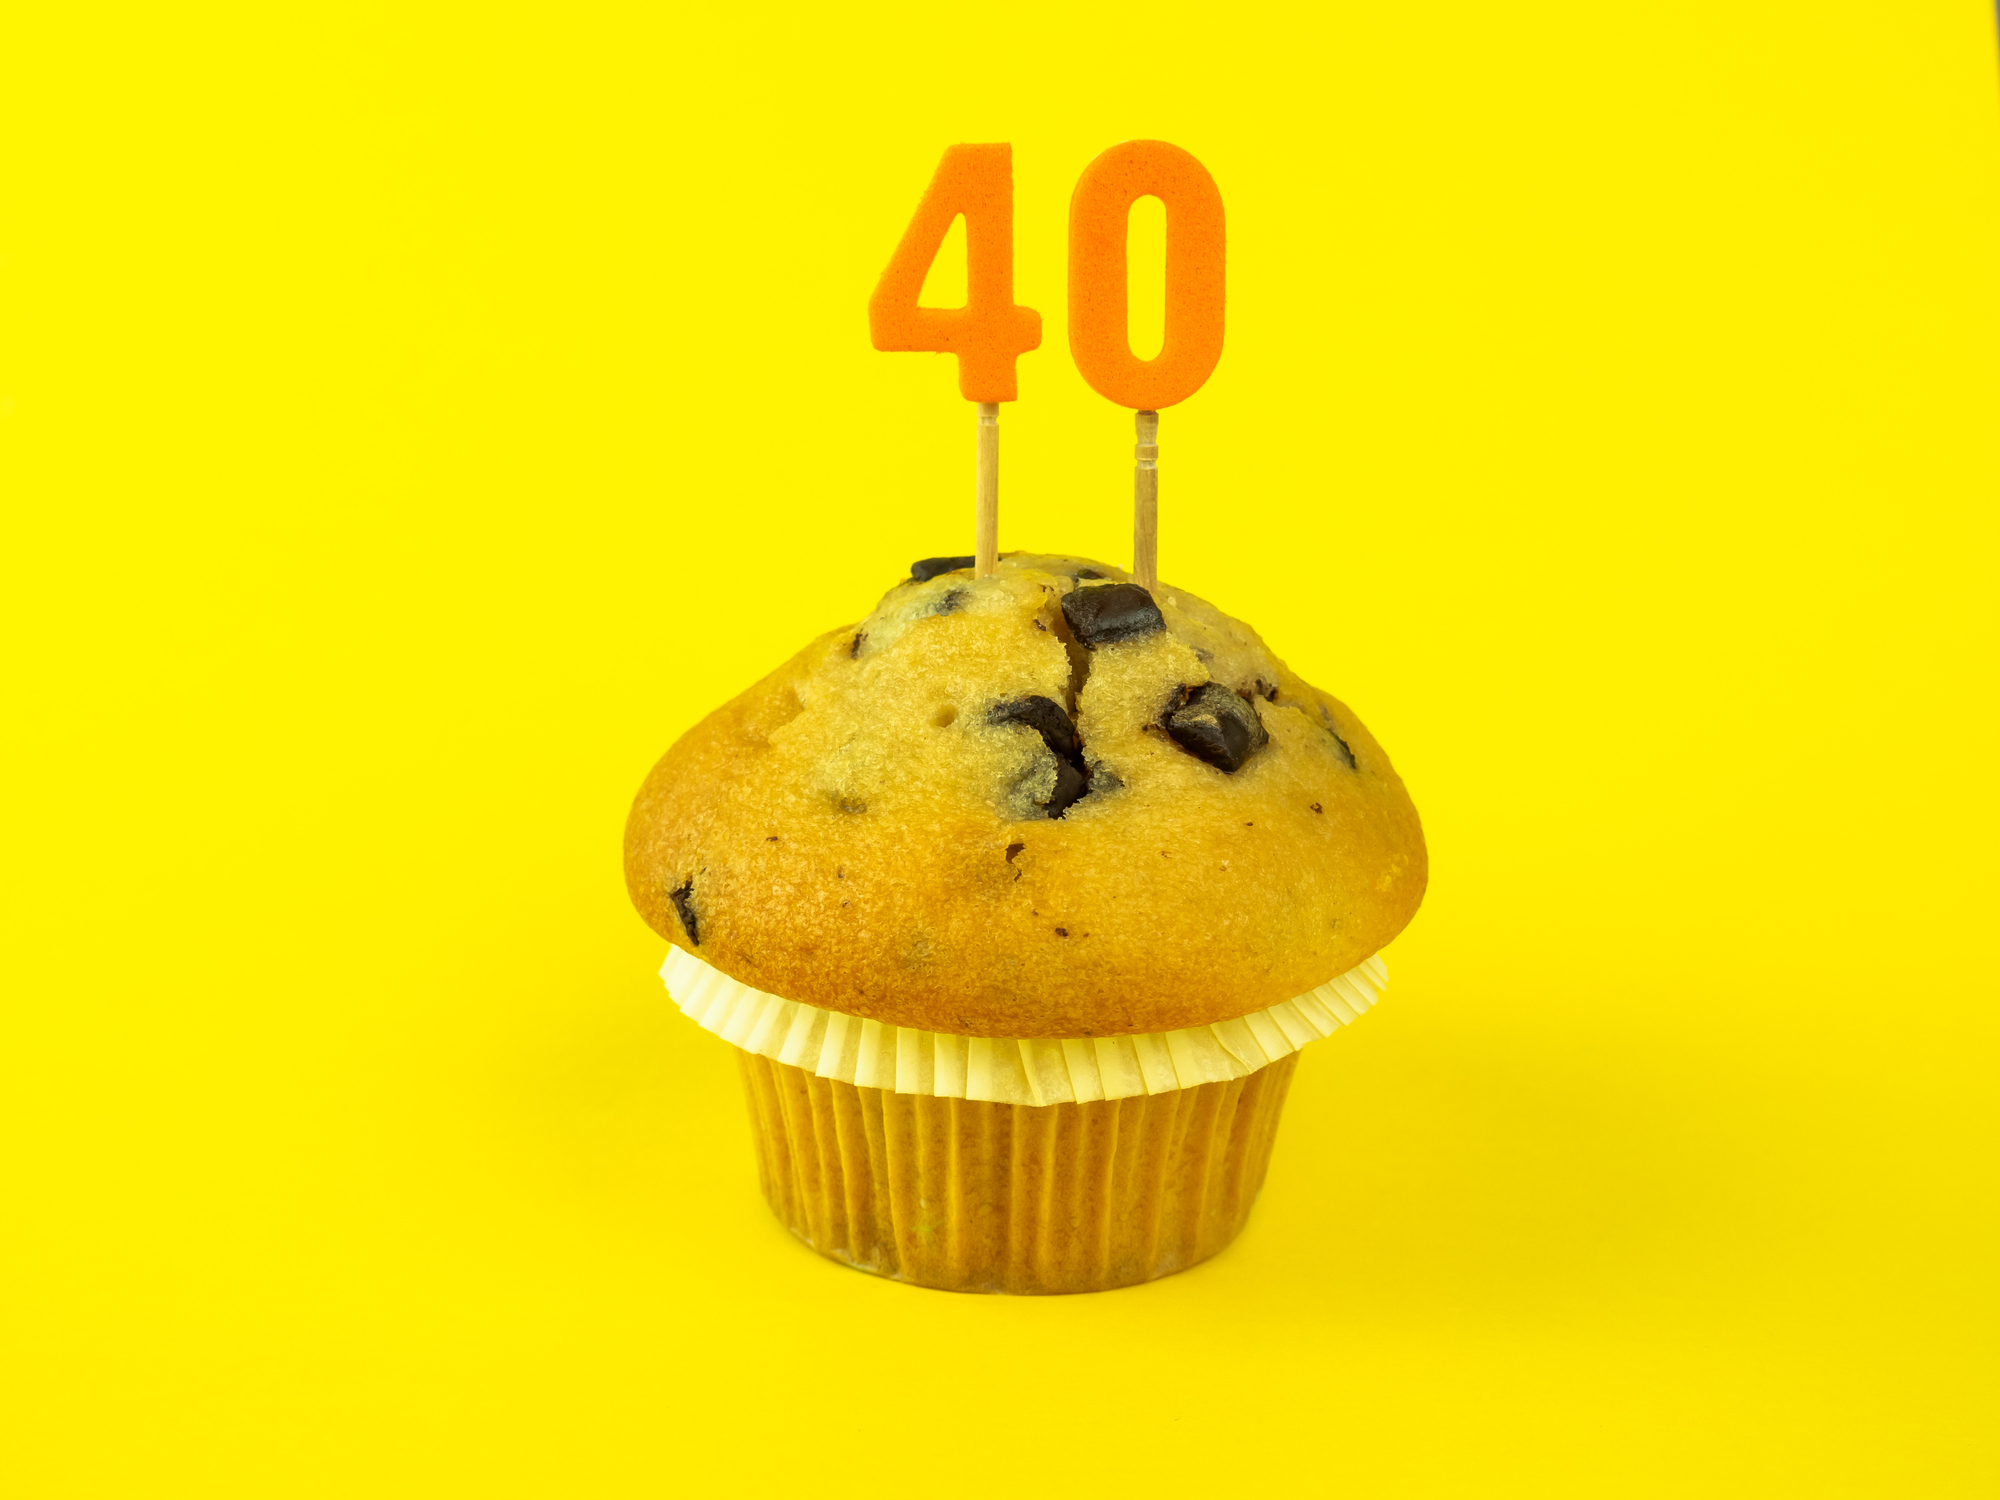 10 ideas para organizar una fiesta de 40 cumpleaños - Cadena Dial